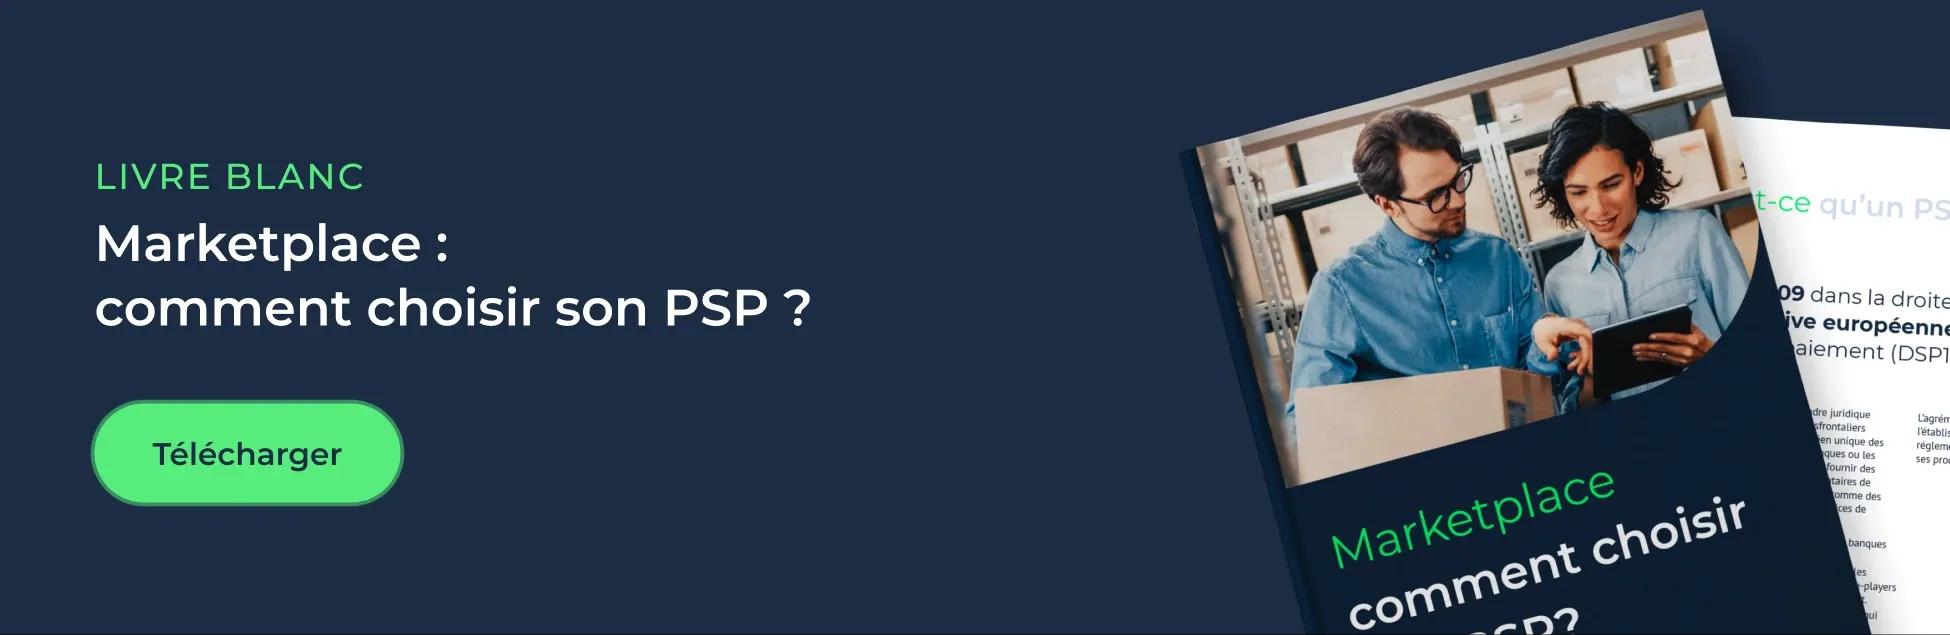 Livre blanc : Marketplace, comment choisir son PSP ?